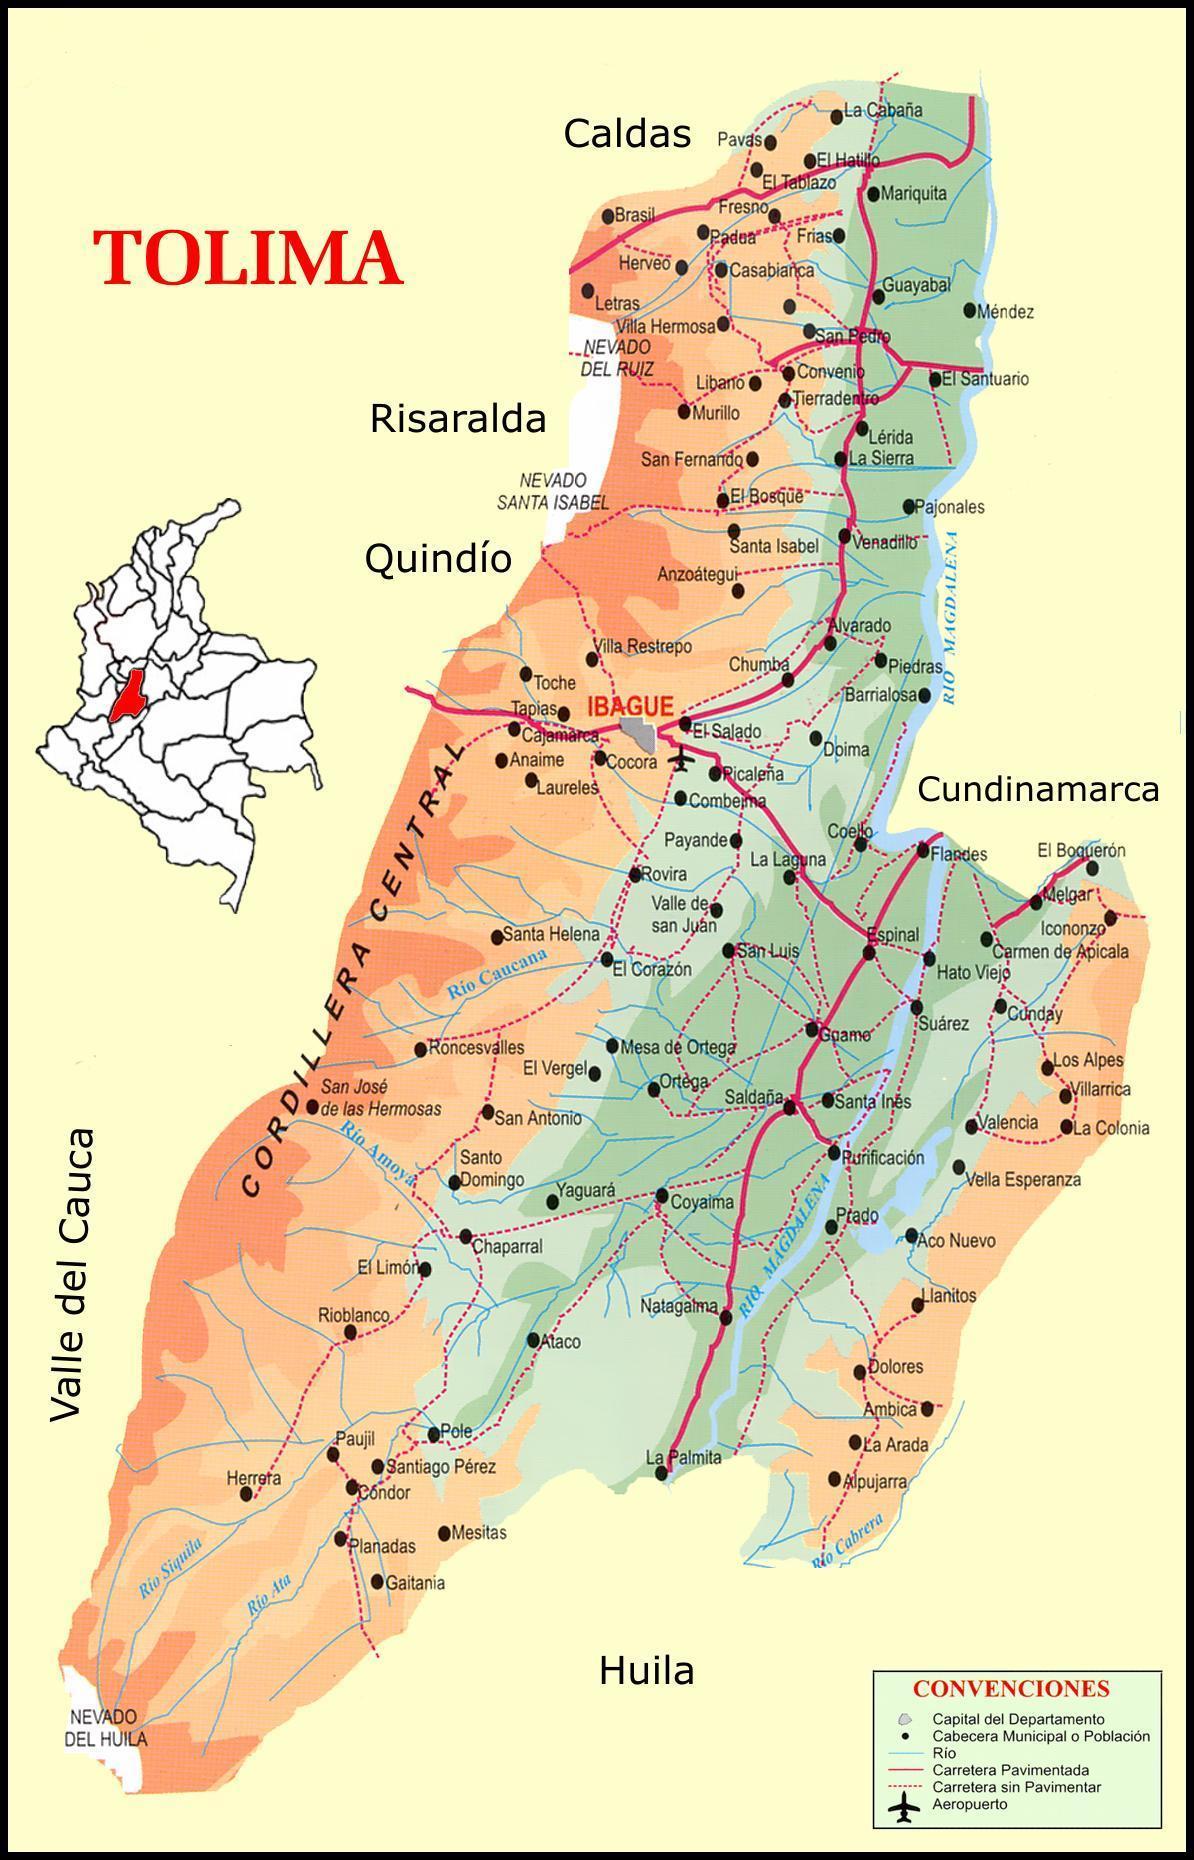 Tolima road map - Full size